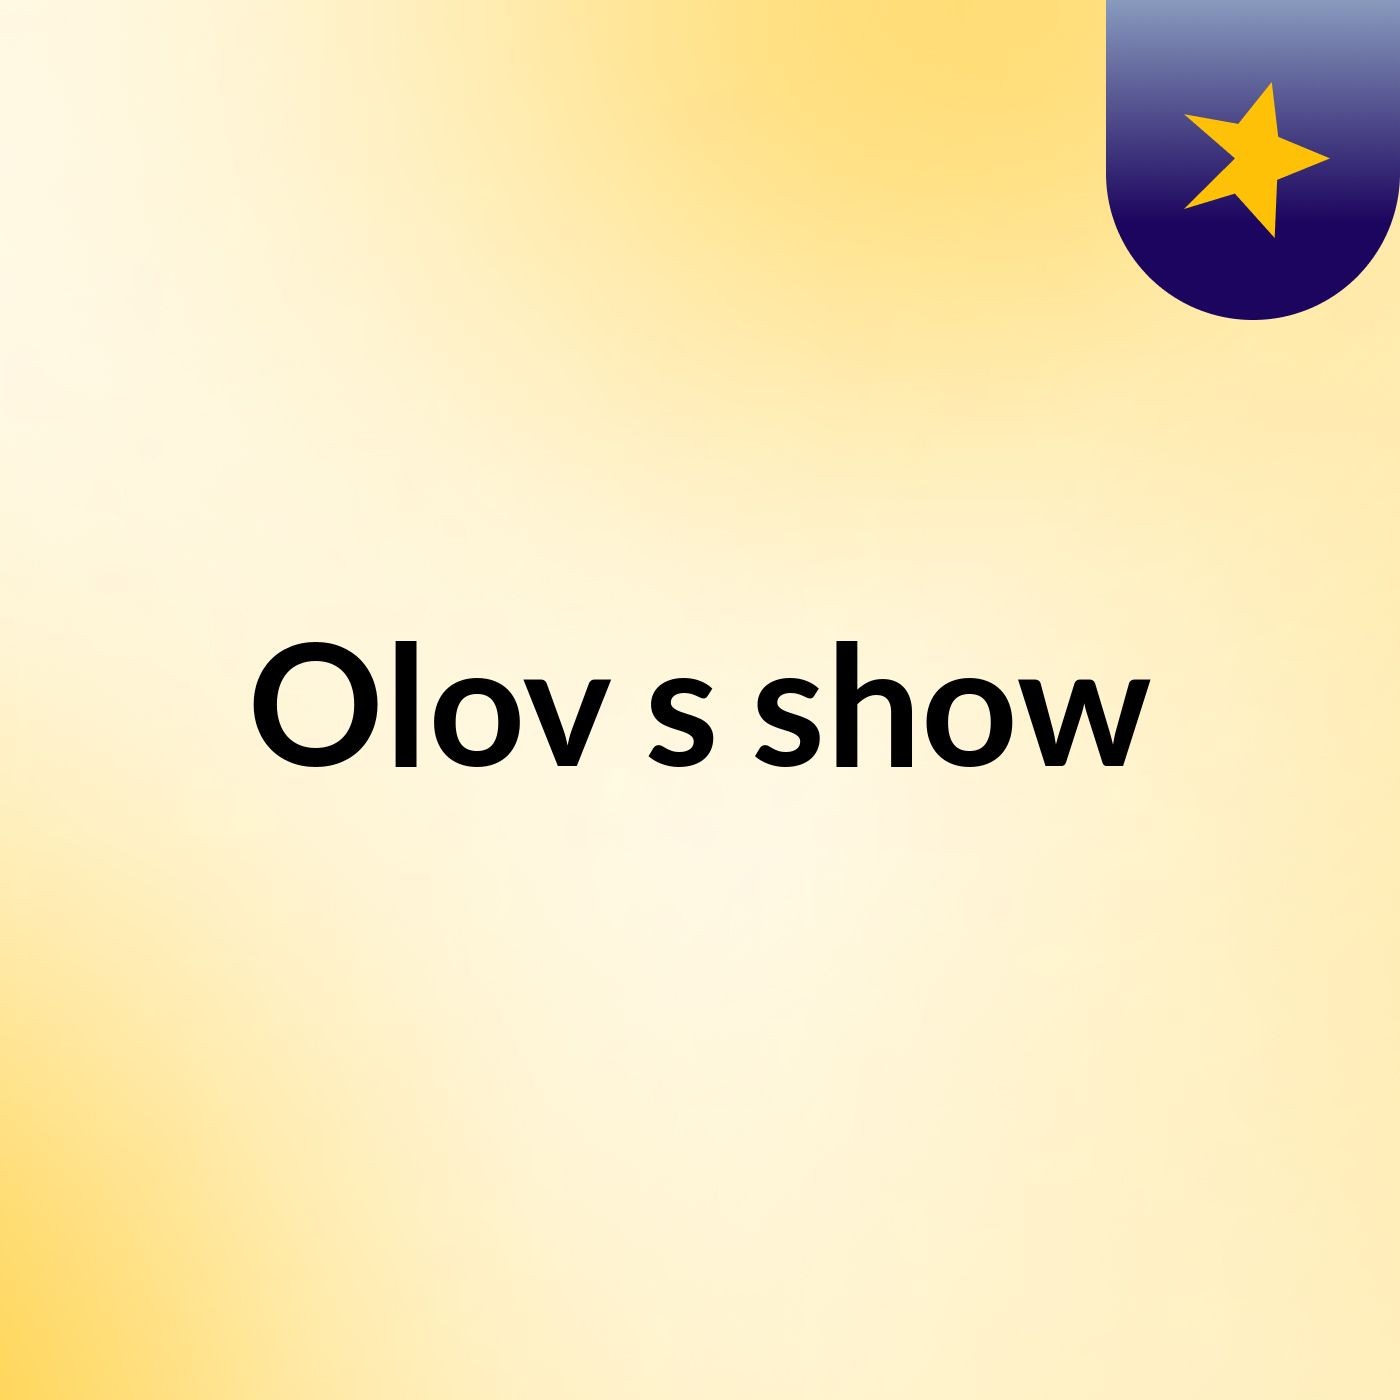 Olov's show